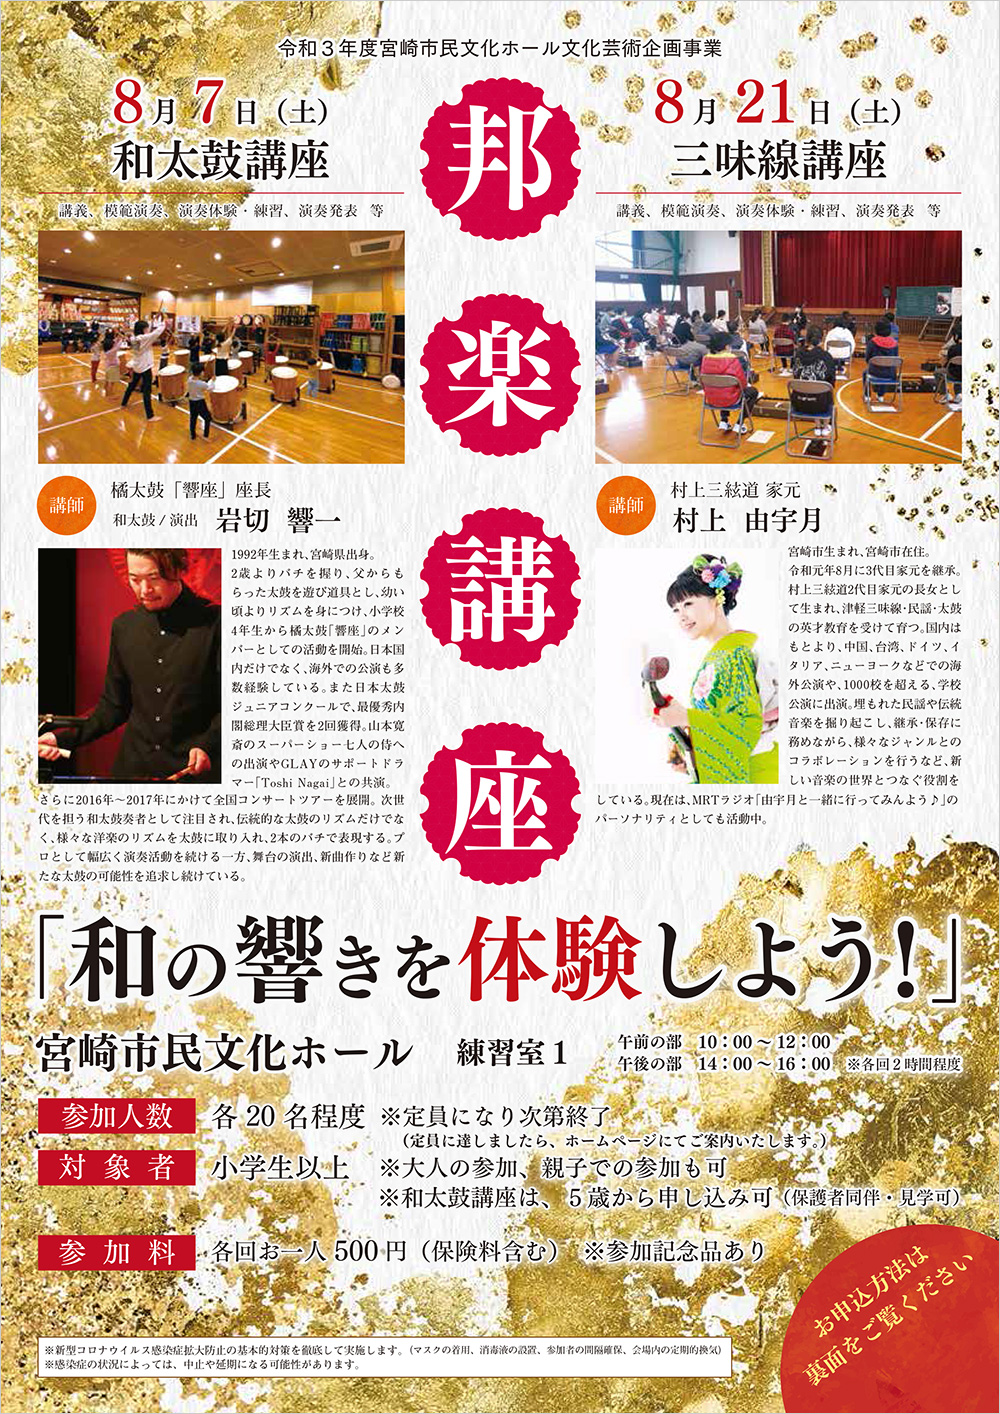 宮崎市民文化ホールイベントスケジュール Blog Archive 邦楽講座 和の響きを体験しよう